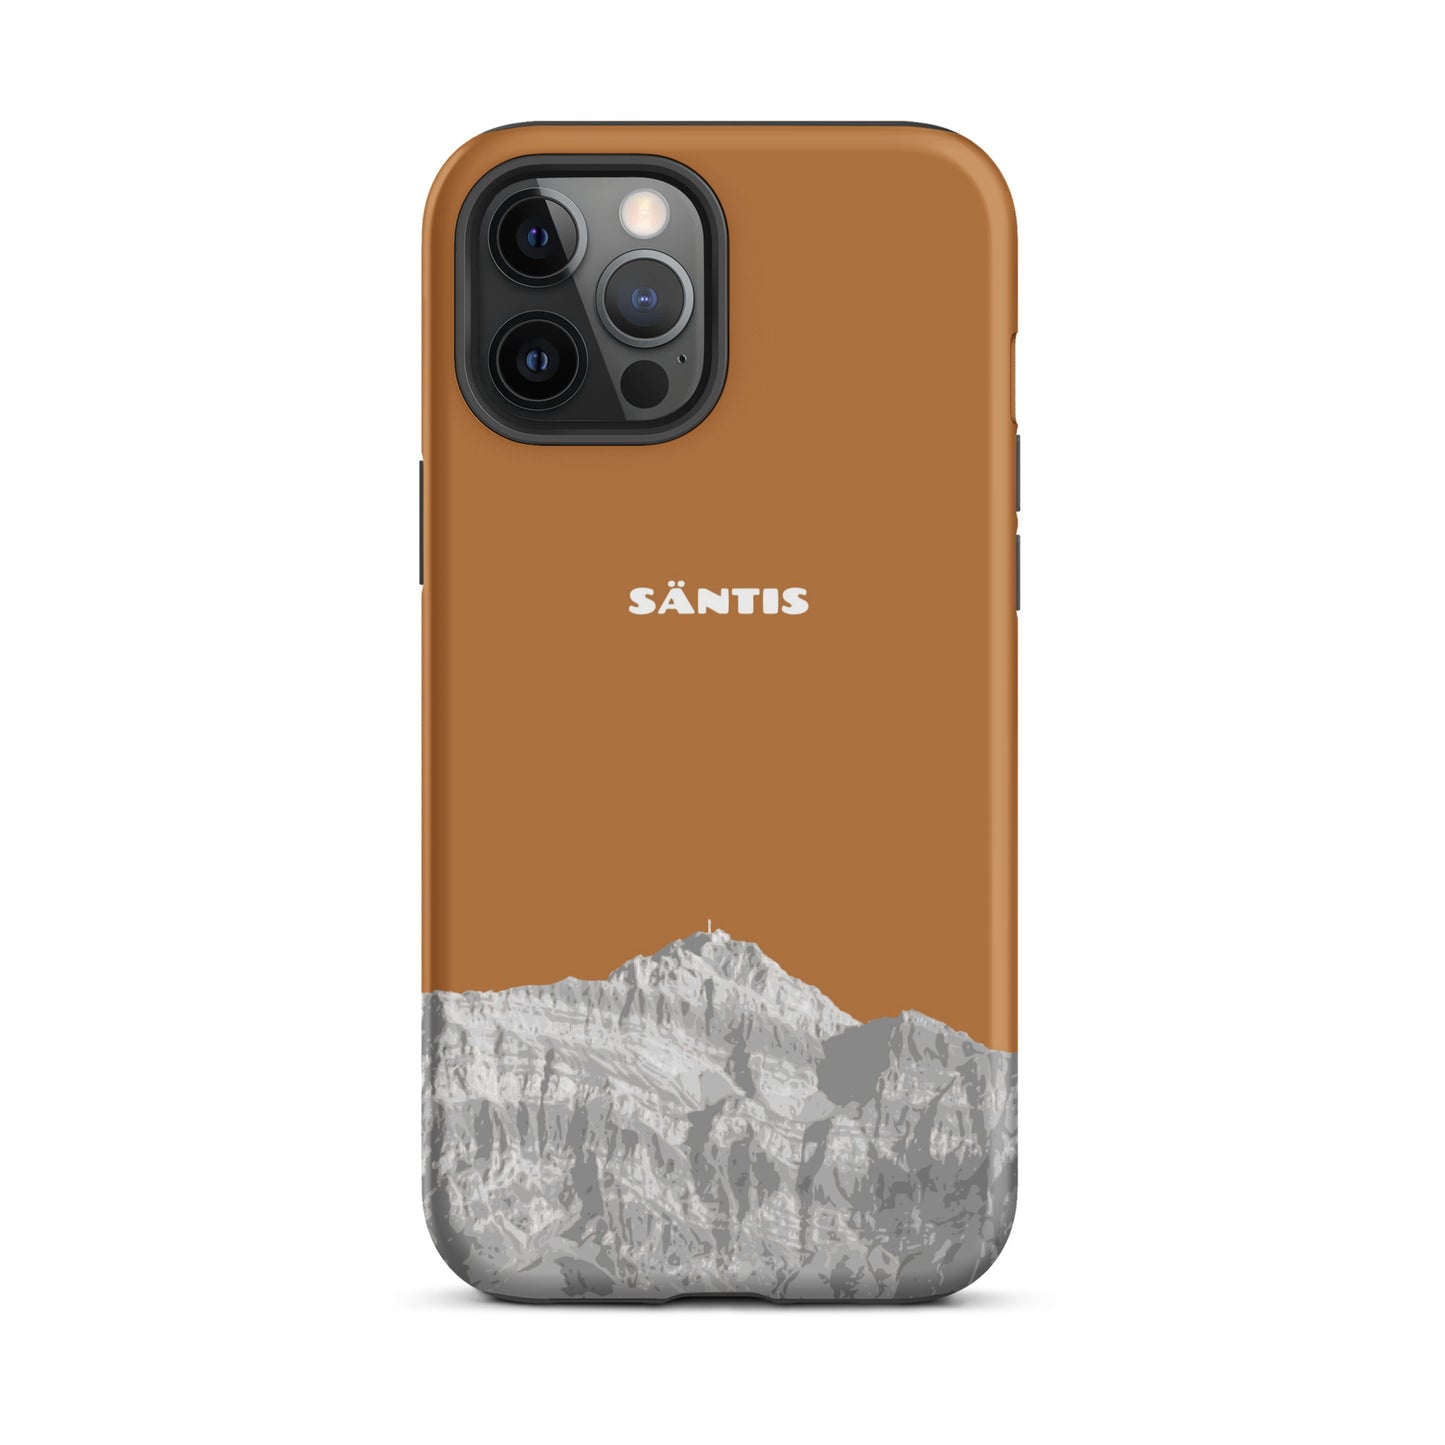 Hülle für das iPhone 12 Pro Max von Apple in der Farbe Kupfer, dass den Säntis im Alpstein zeigt.